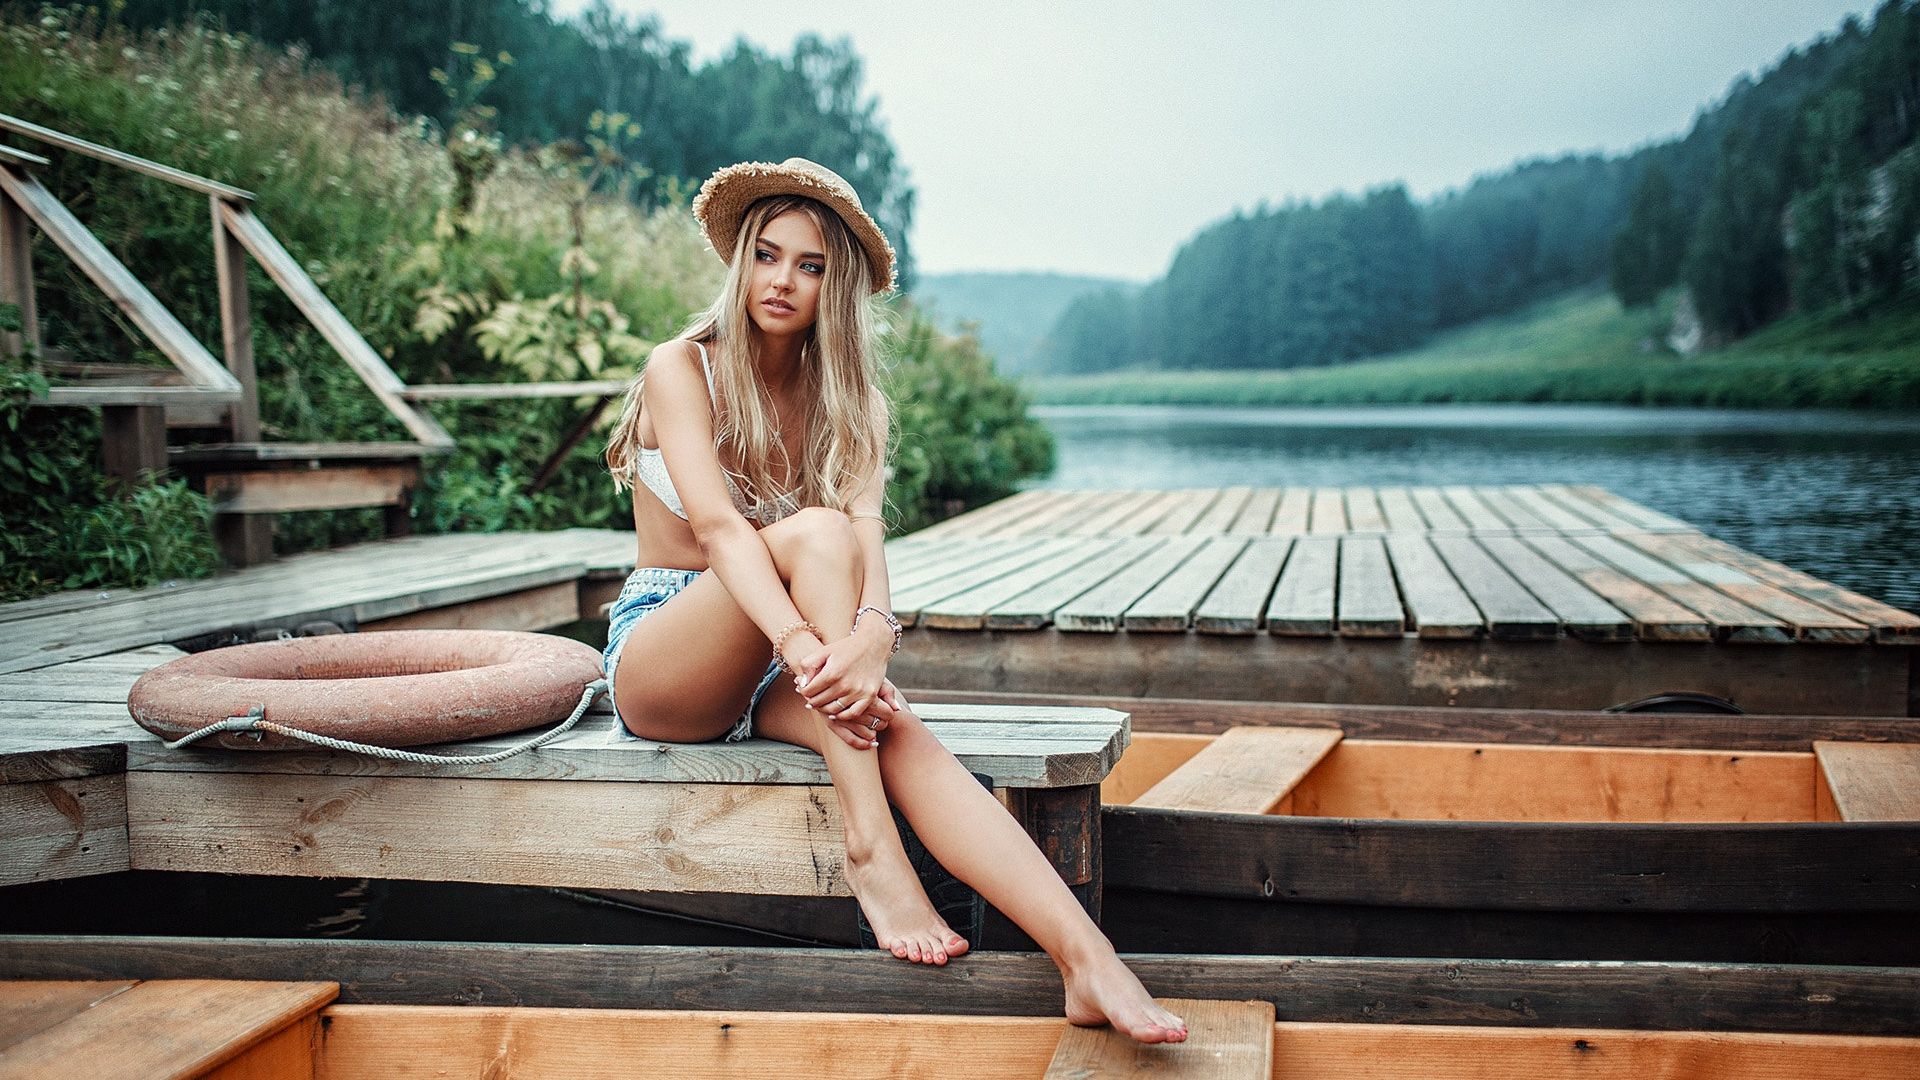 Wallpaper Short jeans, sitting, dock, lake, girl model